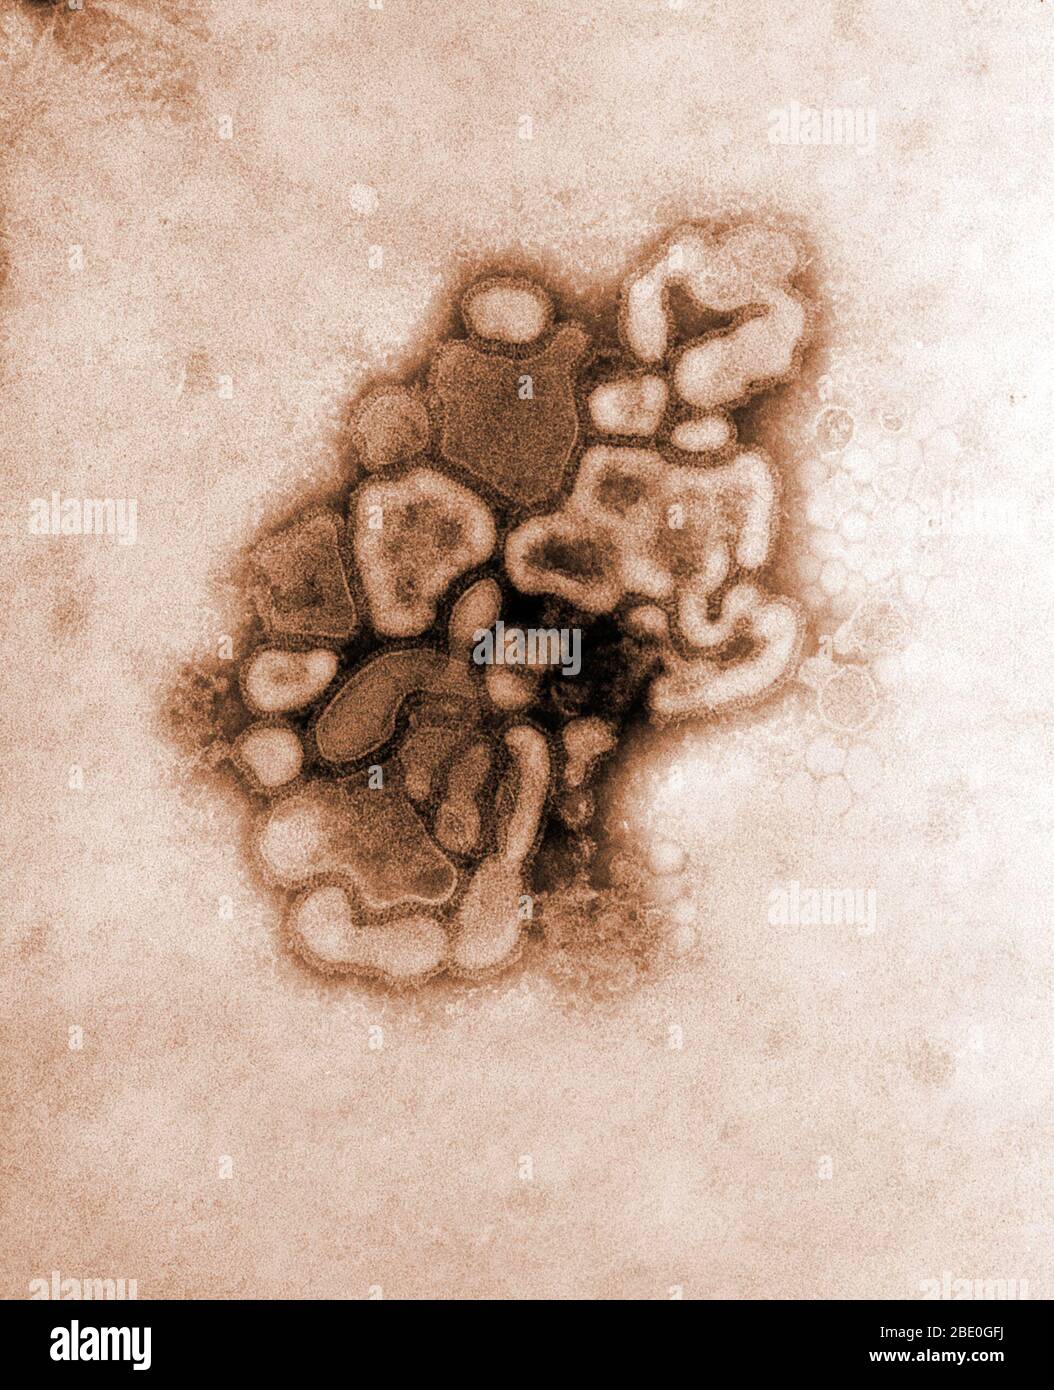 Kolorierte Transmissionselektronenmikrographie (TEM) des A/New Jersey/76 (Hsw1N1)-Virus, während der erste Entwicklungsgang des Virus durch ein Hühnereier erfolgt. Schweinegrippe ist eine Atemwegserkrankung von Schweinen, die durch eine Grippe vom Typ A verursacht wird und regelmäßig zu einem Grippeausbruch bei Schweinen führt. Schweinegrippe-Viren verursachen hohe Krankheitswerte und niedrige Todesraten bei Schweinen. Schweinegrippeviren können in den Schweinen das ganze Jahr über zirkulieren, aber die meisten Ausbrüche unter den Schweinehüchsen treten während der späten Herbst- und Wintermonate auf, ähnlich wie bei Menschen. Das klassische Schweinegrippe-Virus (ein Influenza-Typ Stockfoto